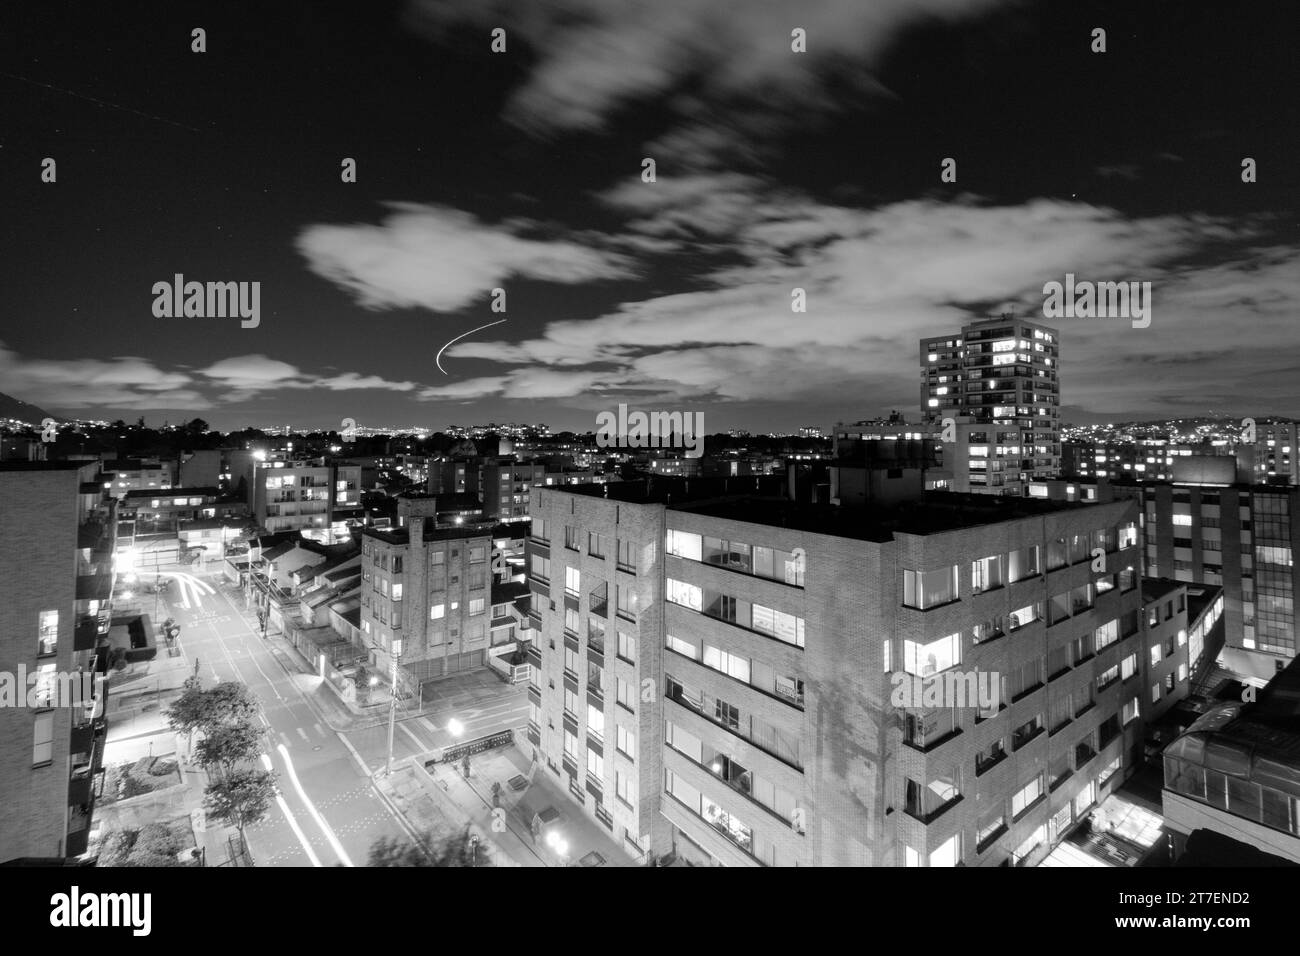 Belle photographie aérienne de quartier résidentiel de bogota colombie en noir et blanc Banque D'Images